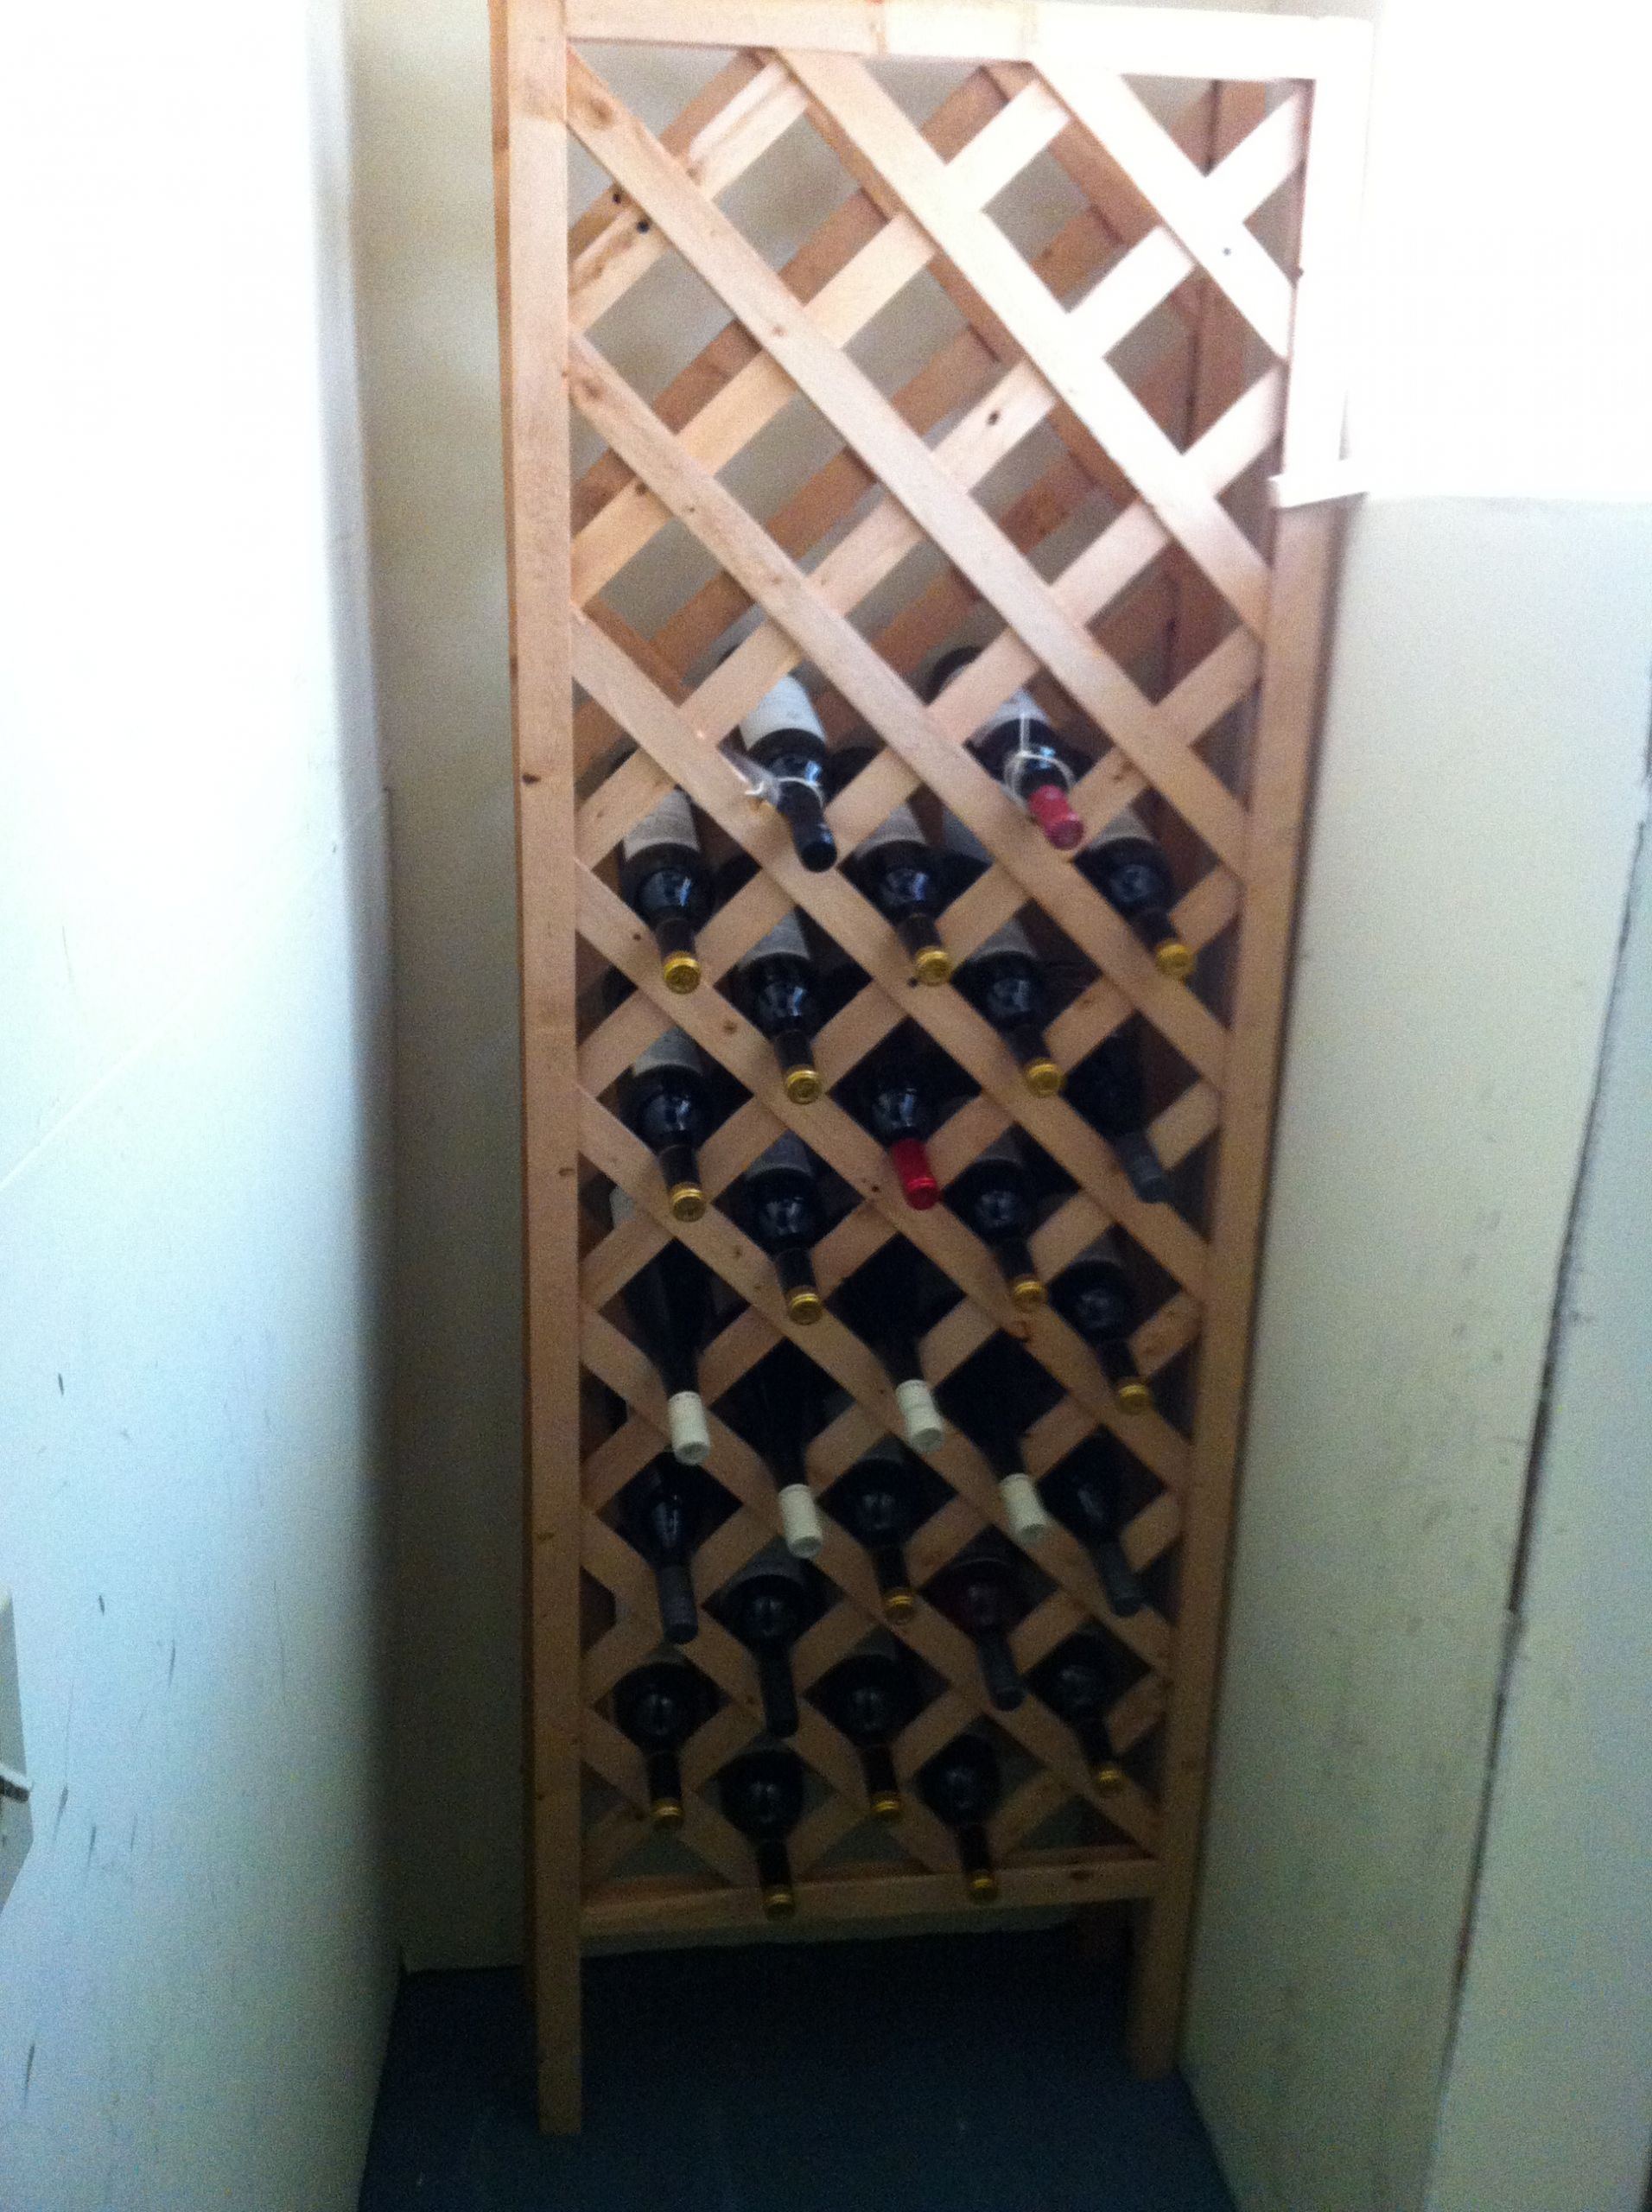 DIY Wine Cellar Rack
 The DIY Wine Cellar